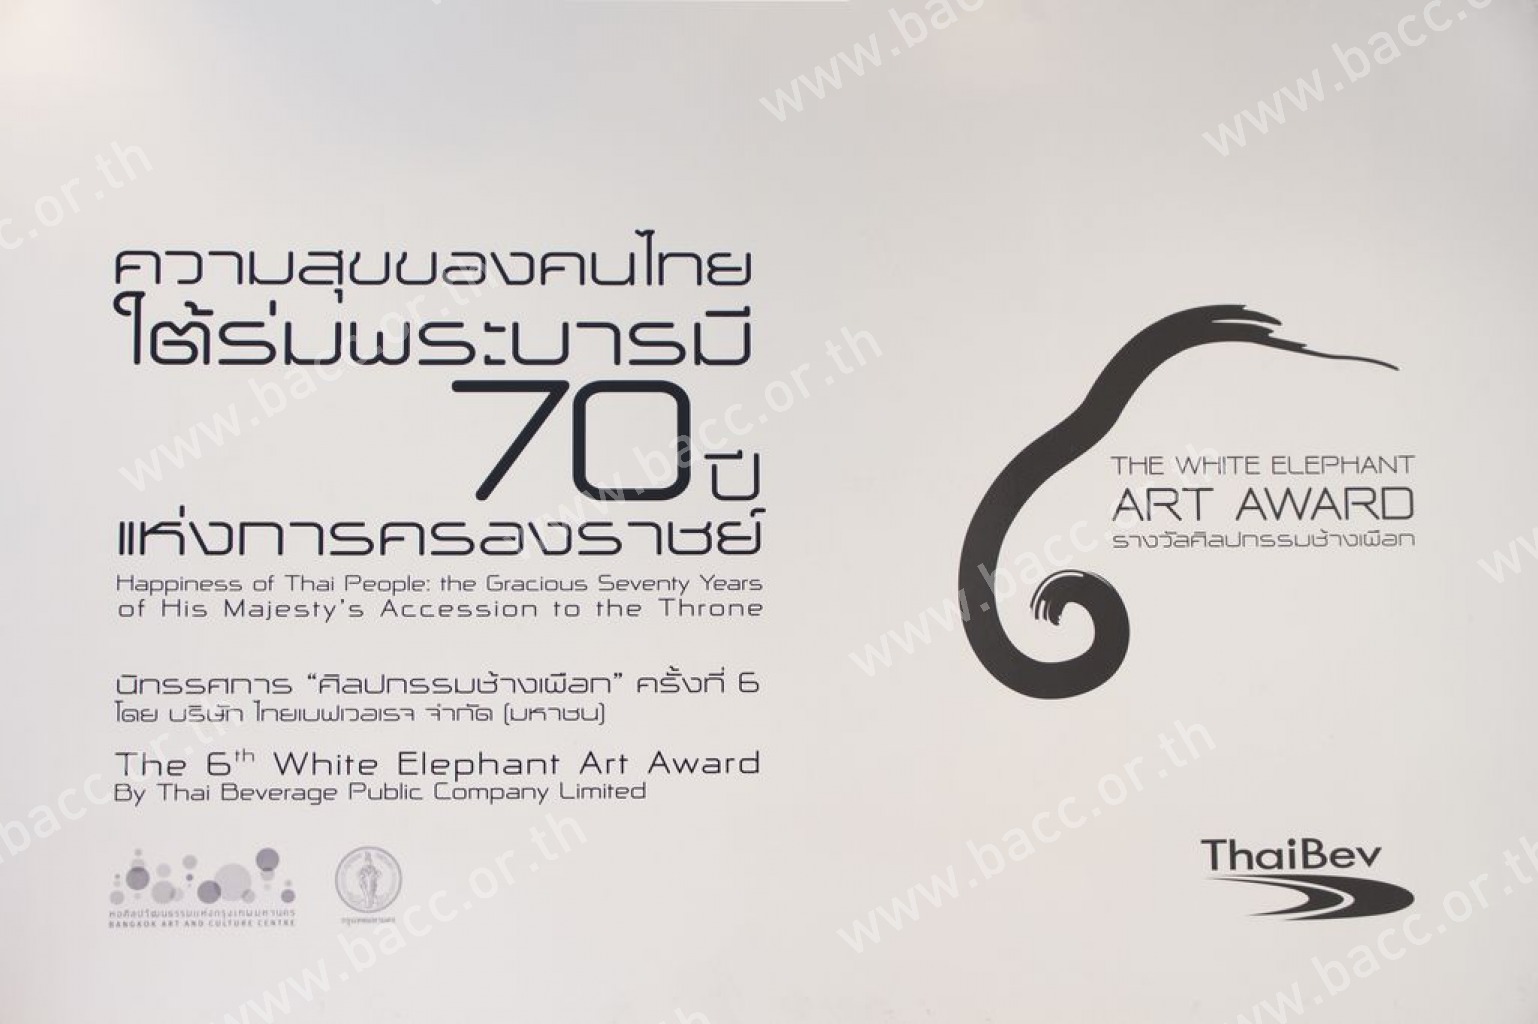 นิทรรศการศิลปกรรมช้างเผือก ครั้งที่ 6 : ความสุขของคนไทย ใต้ร่มพระบารมี 70 ปี  แห่งการครองราชย์